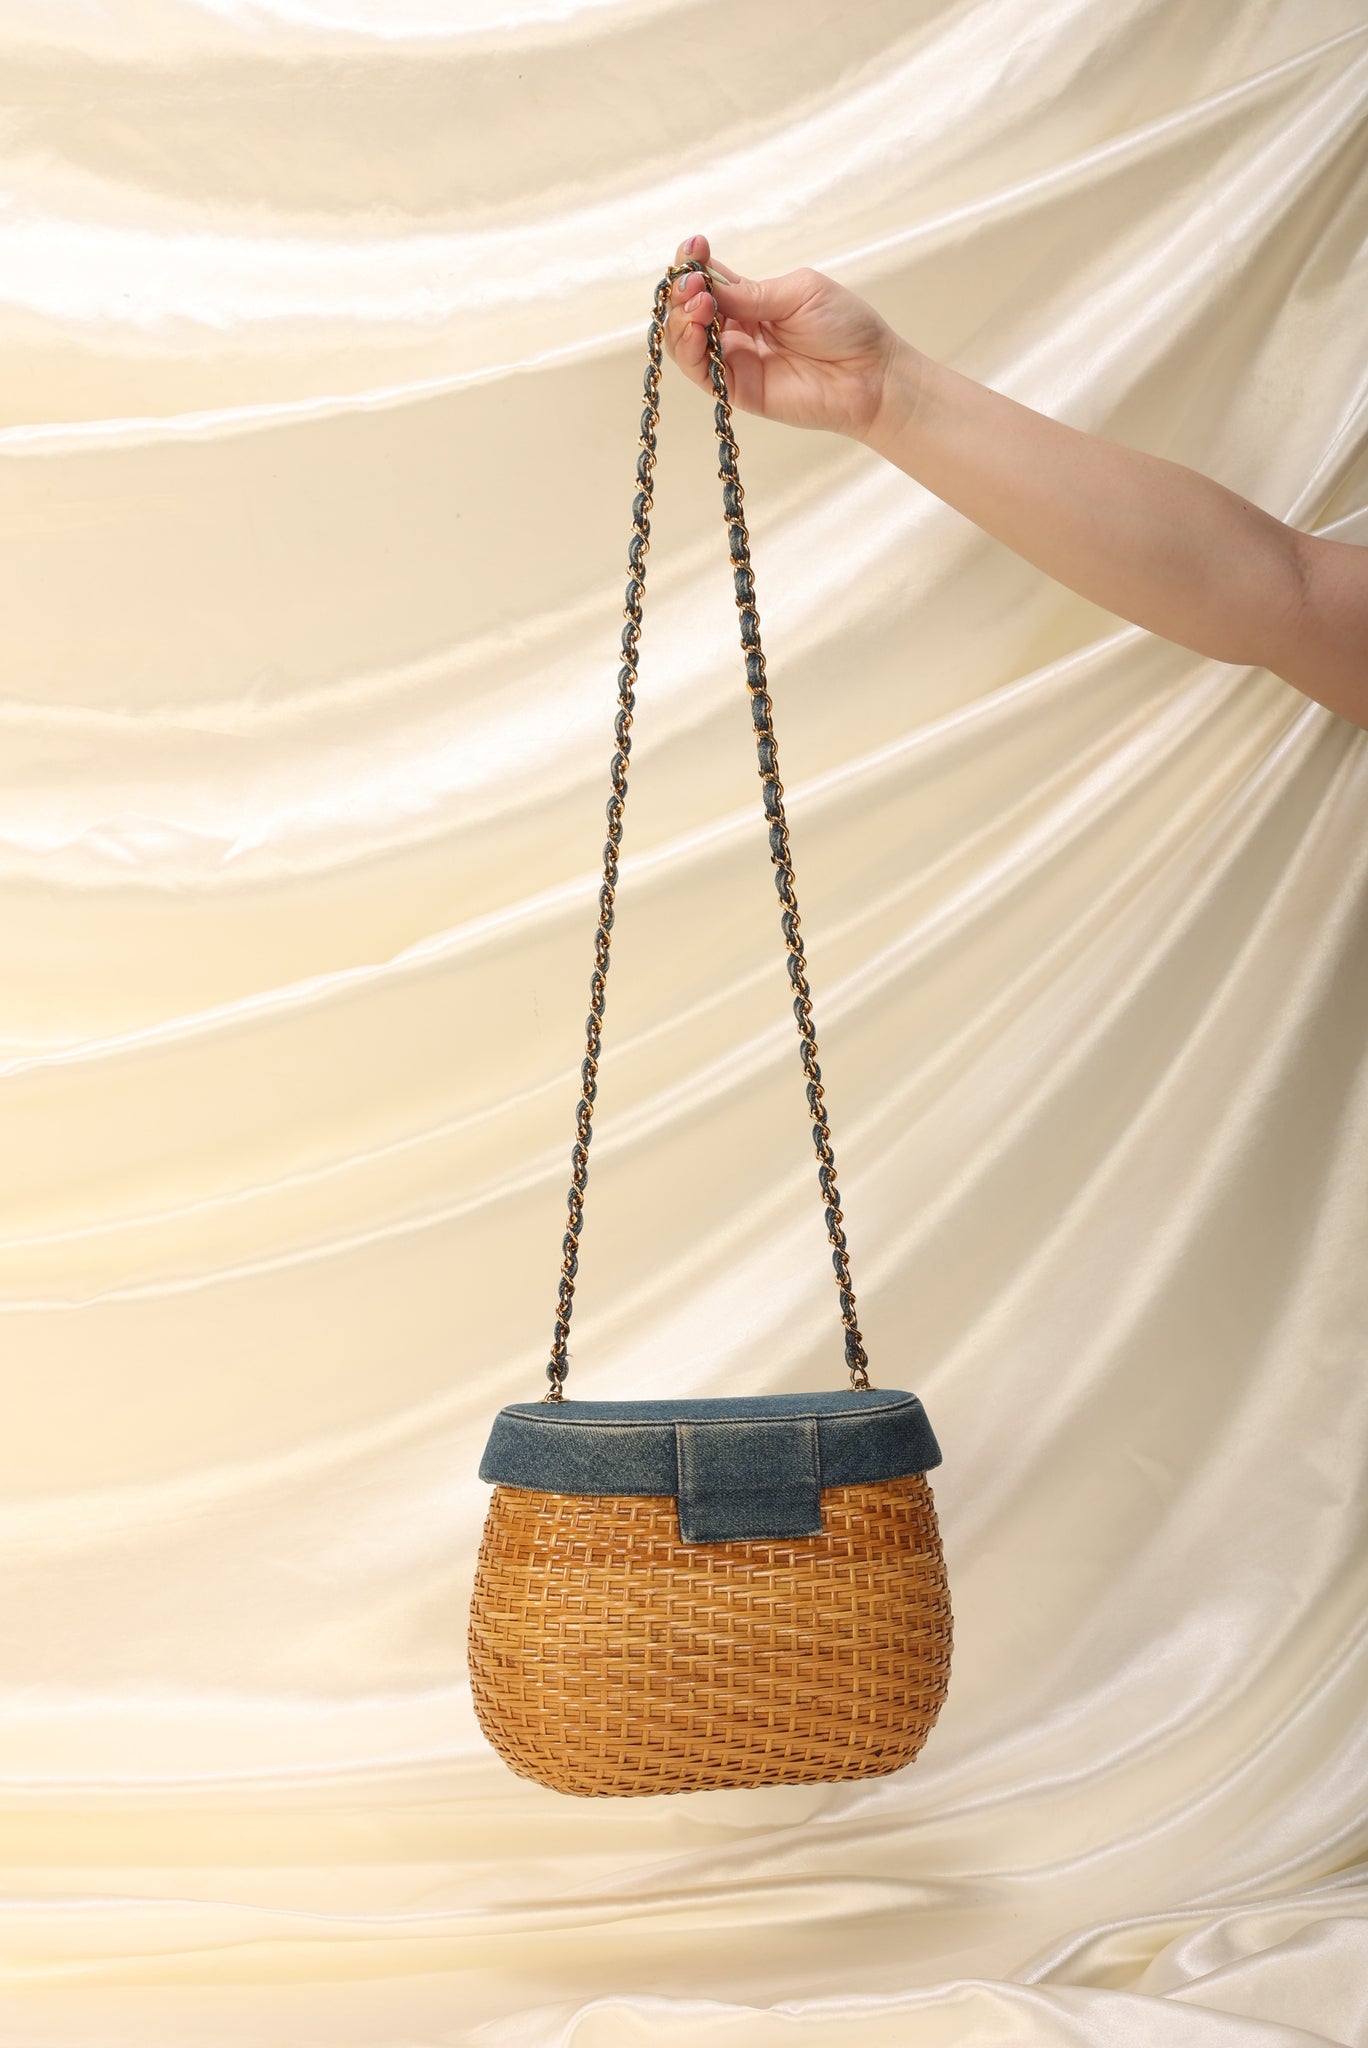 Chanel Wicker Basket Bag